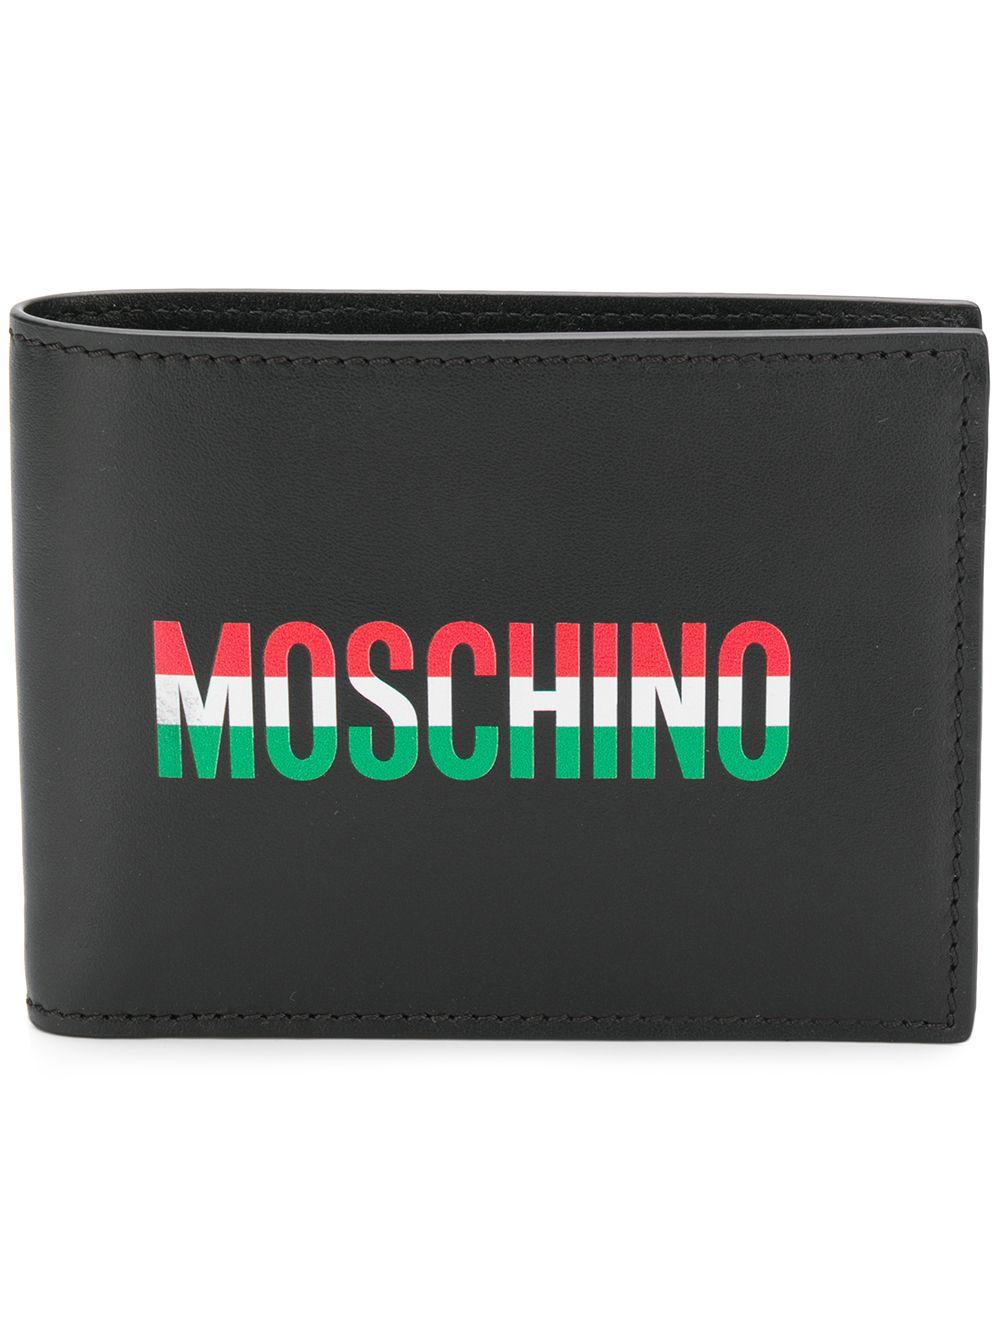 اكتشاف طفيف الدفء moschino wallet mens 